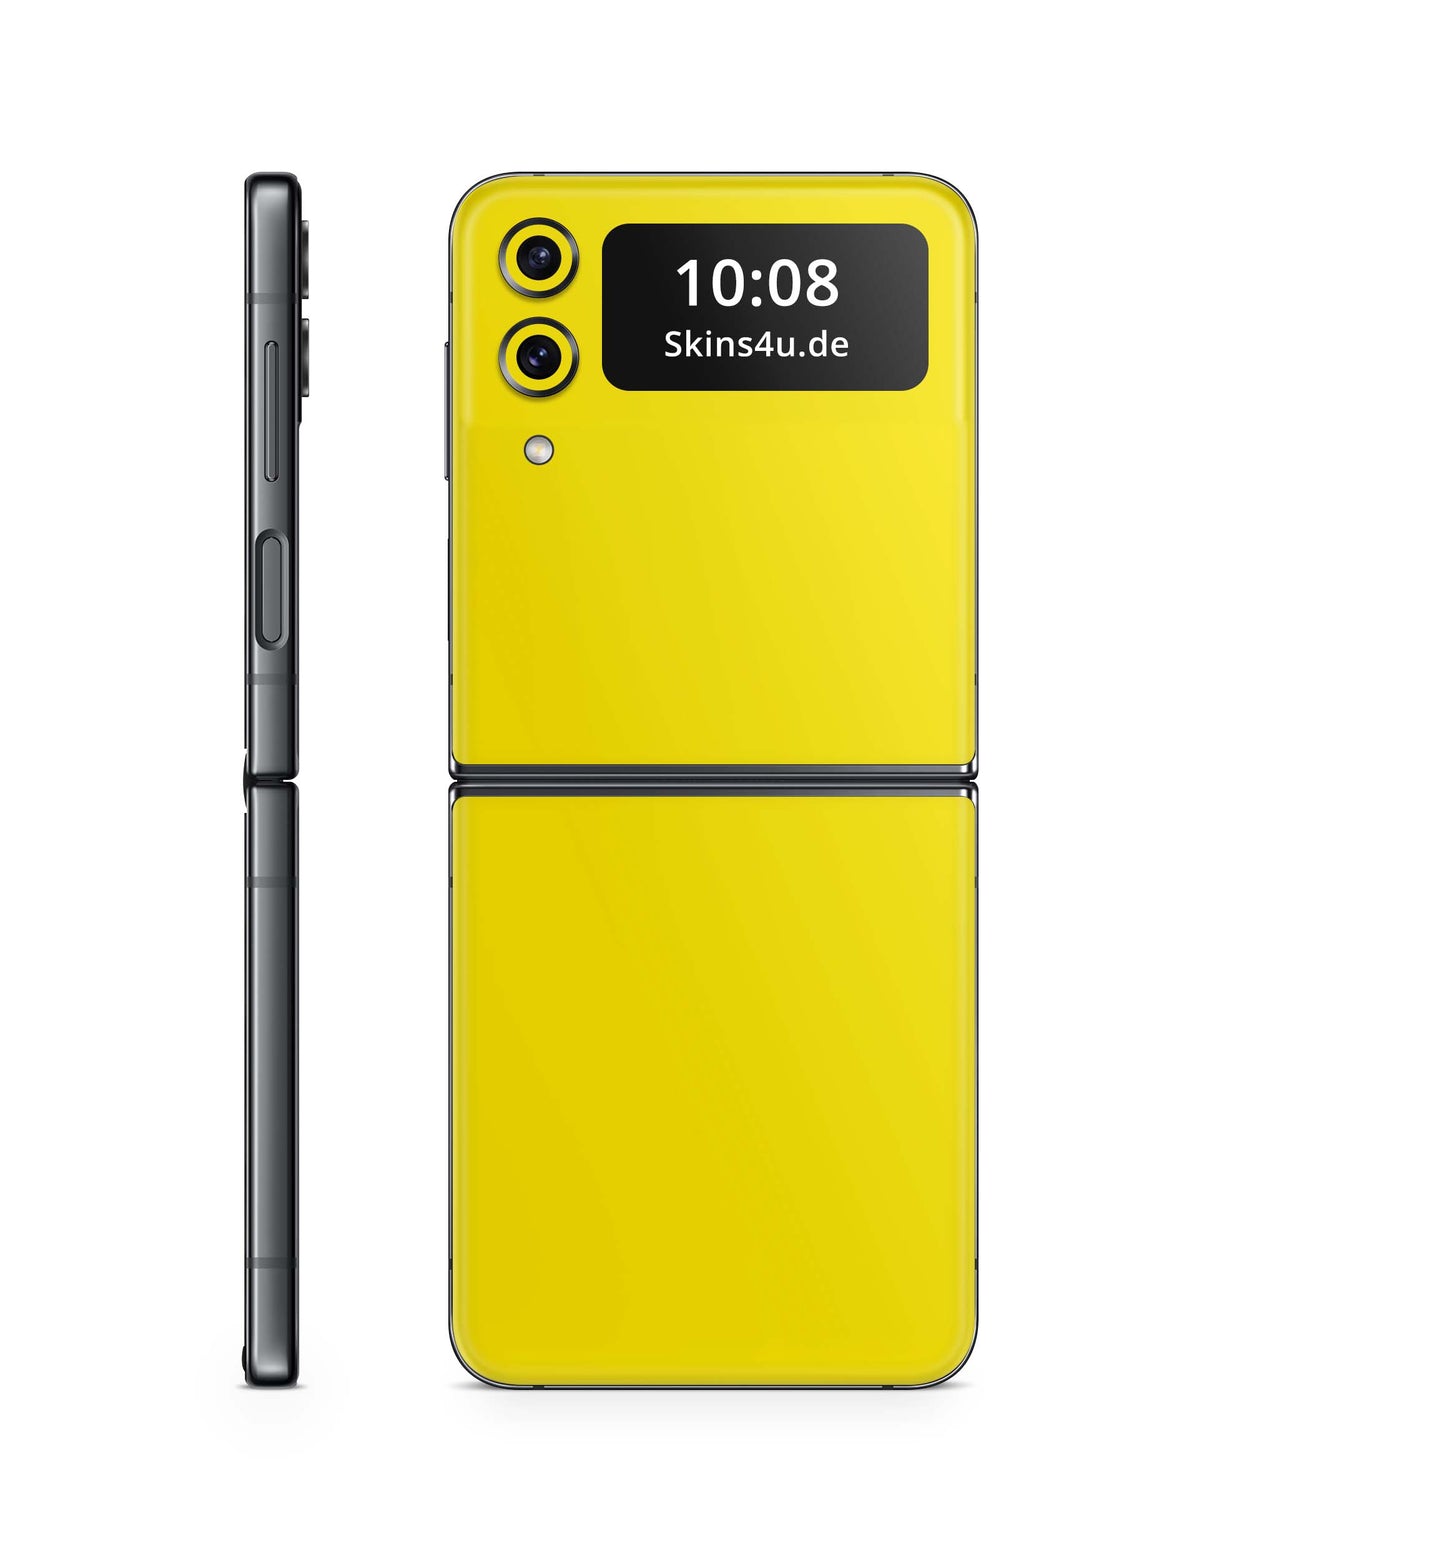 Samsung Galaxy Z Flip 3 Flip 4 Skin Handy Folie Premium Solid State gelb Aufkleber Skins4u   